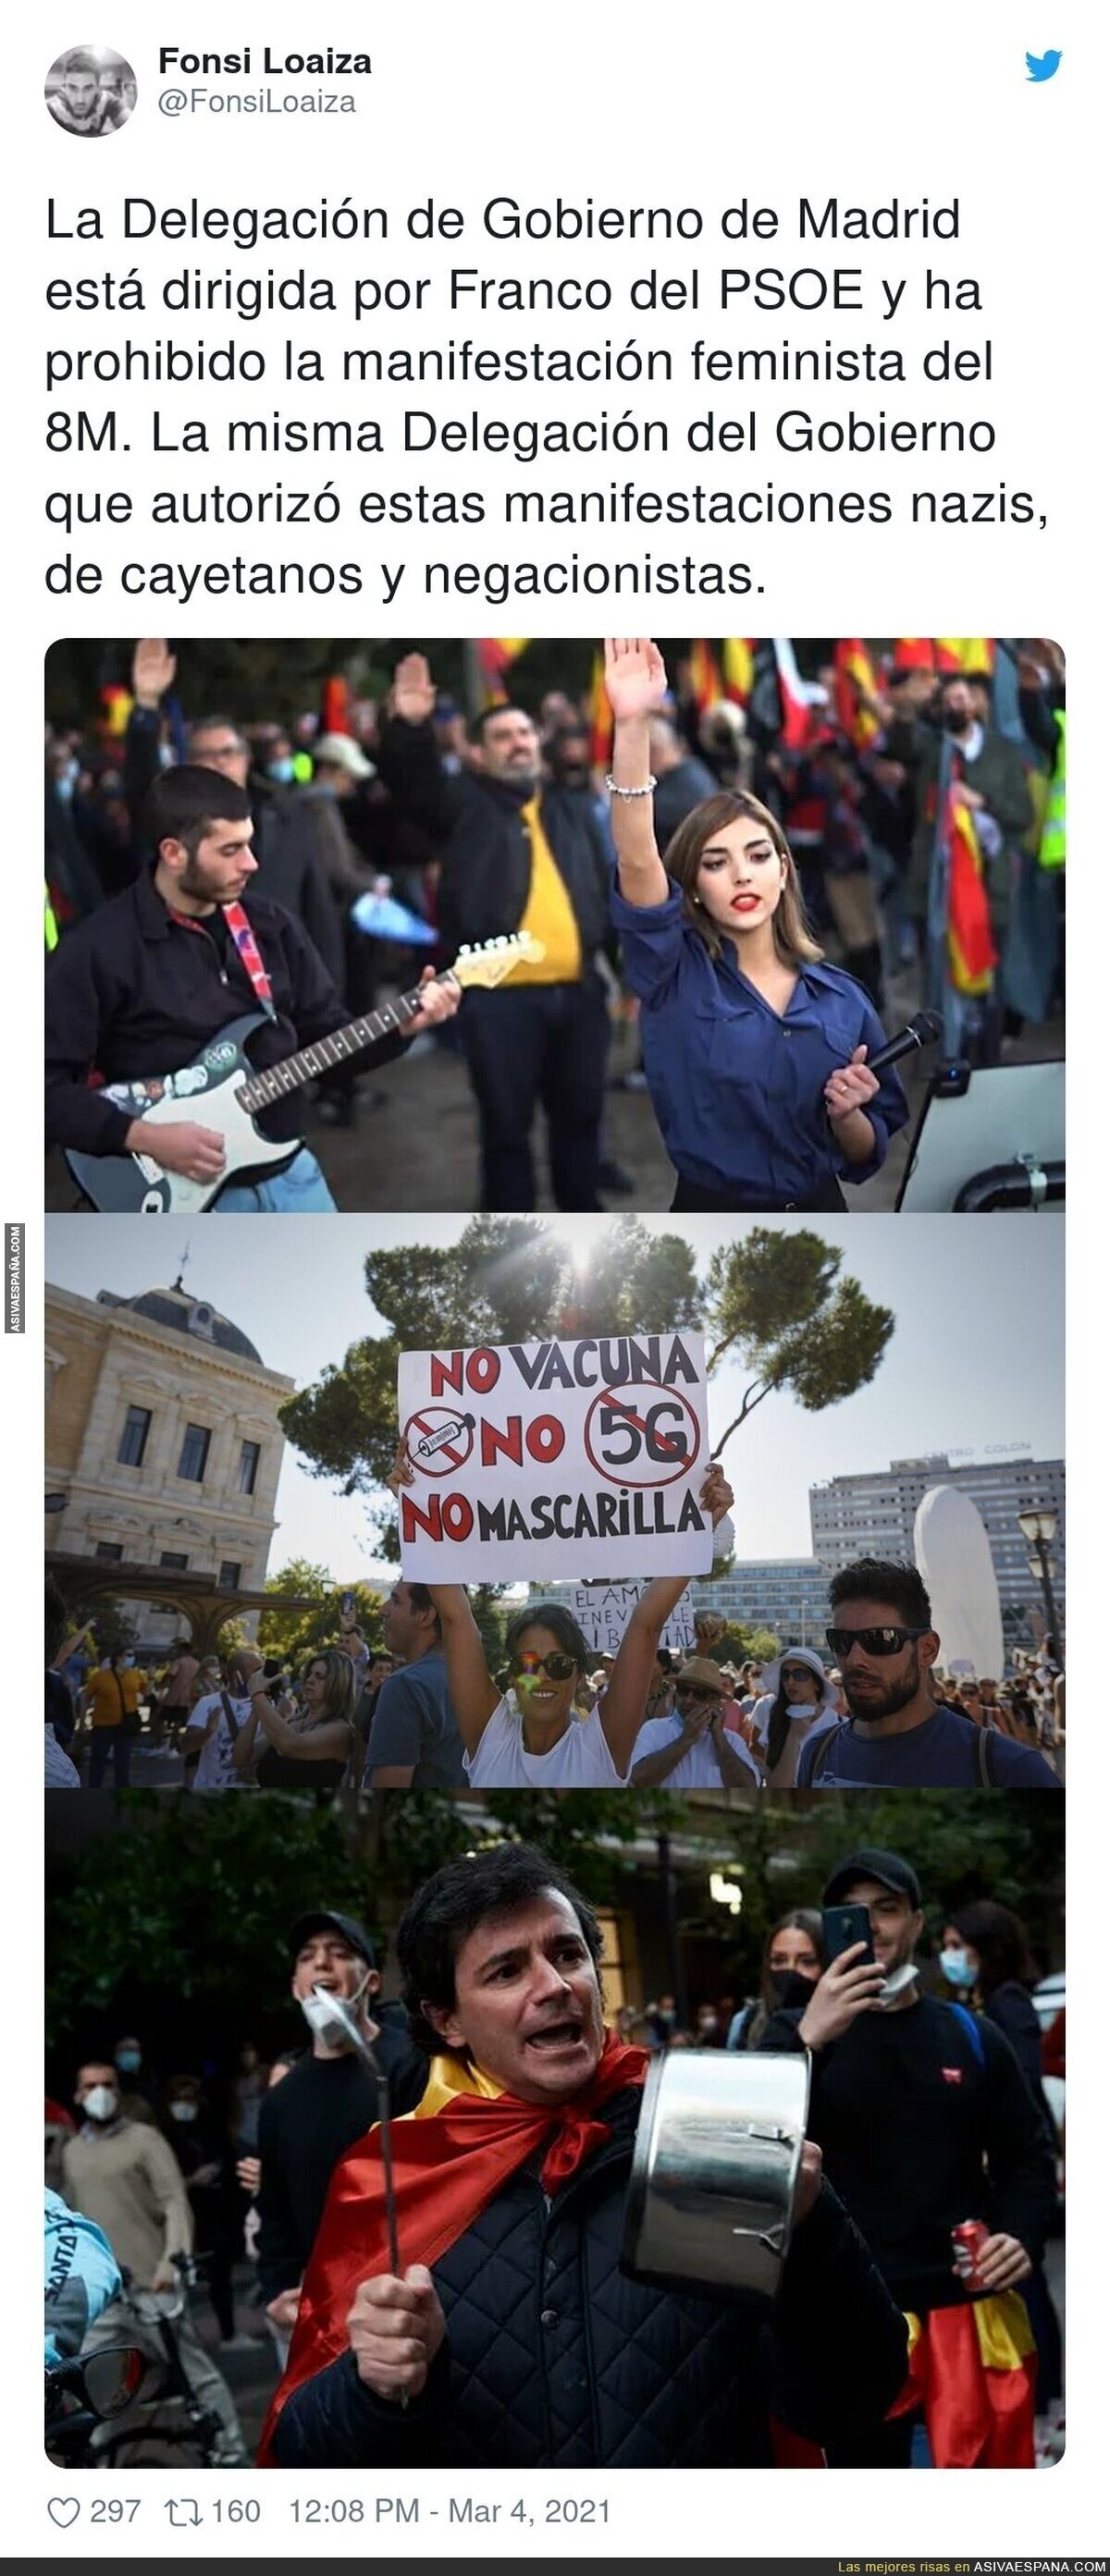 Las manifestaciones que están encantados de recibir en Madrid